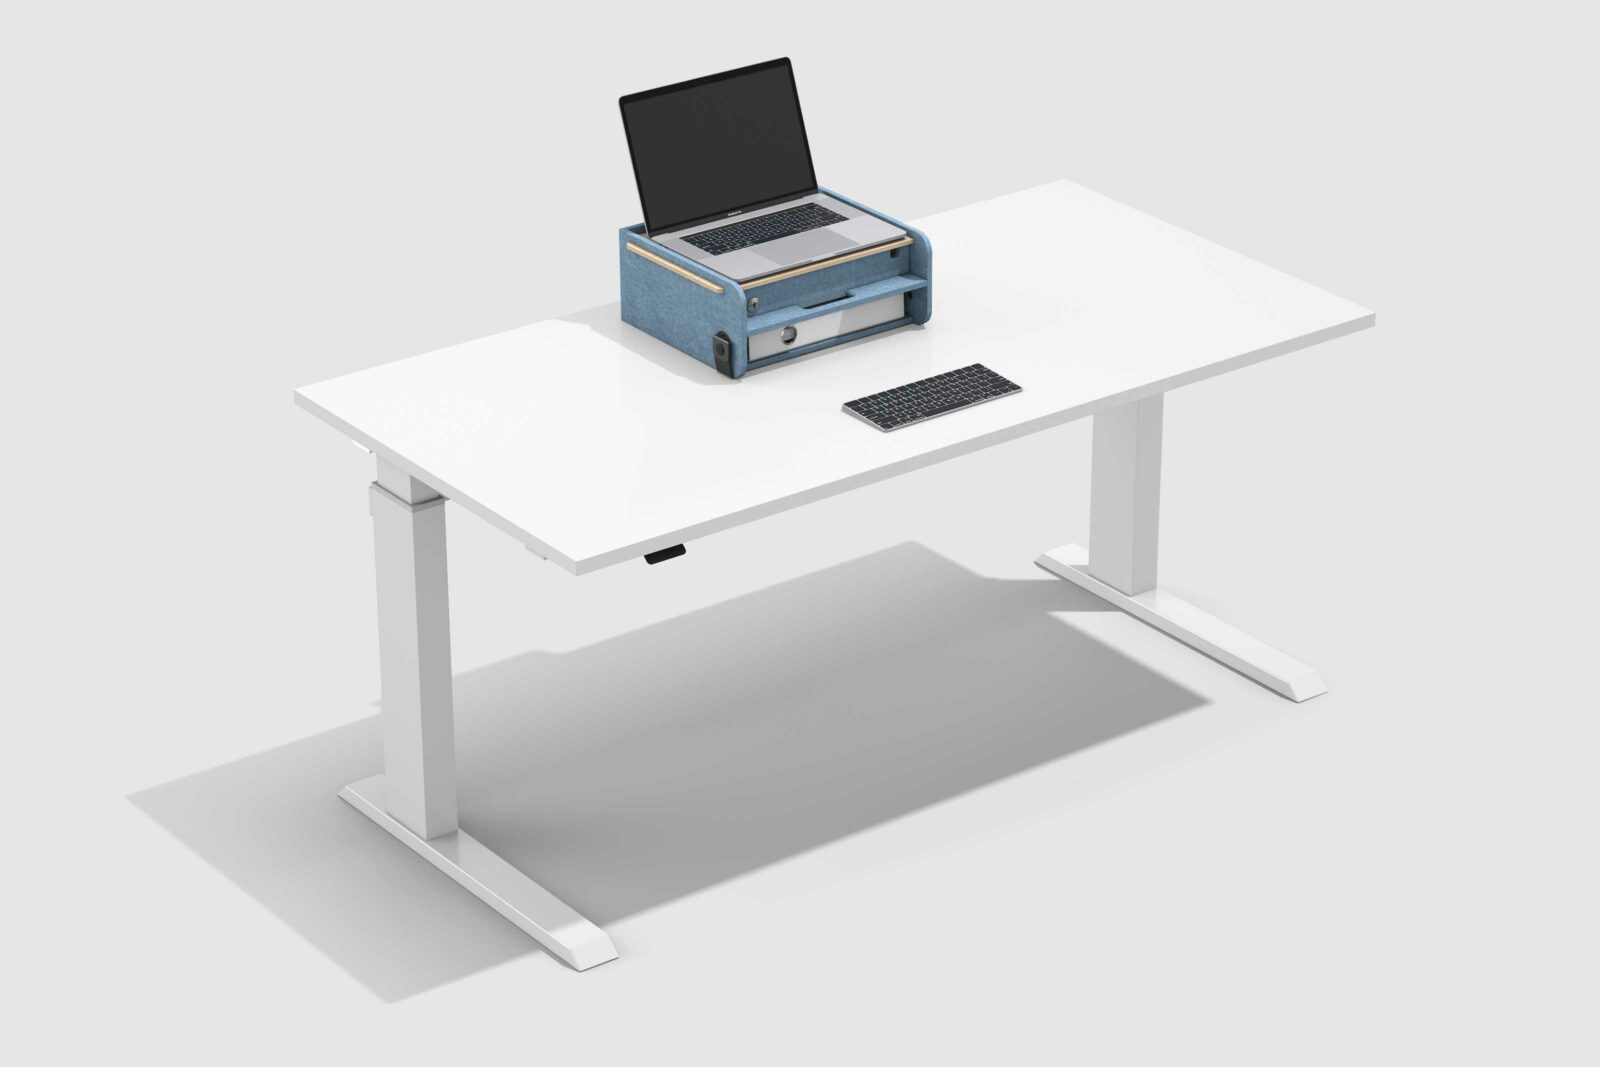 Weisser Schreibtisch mit Neo Box, die als Laptop Stand verwendet wird